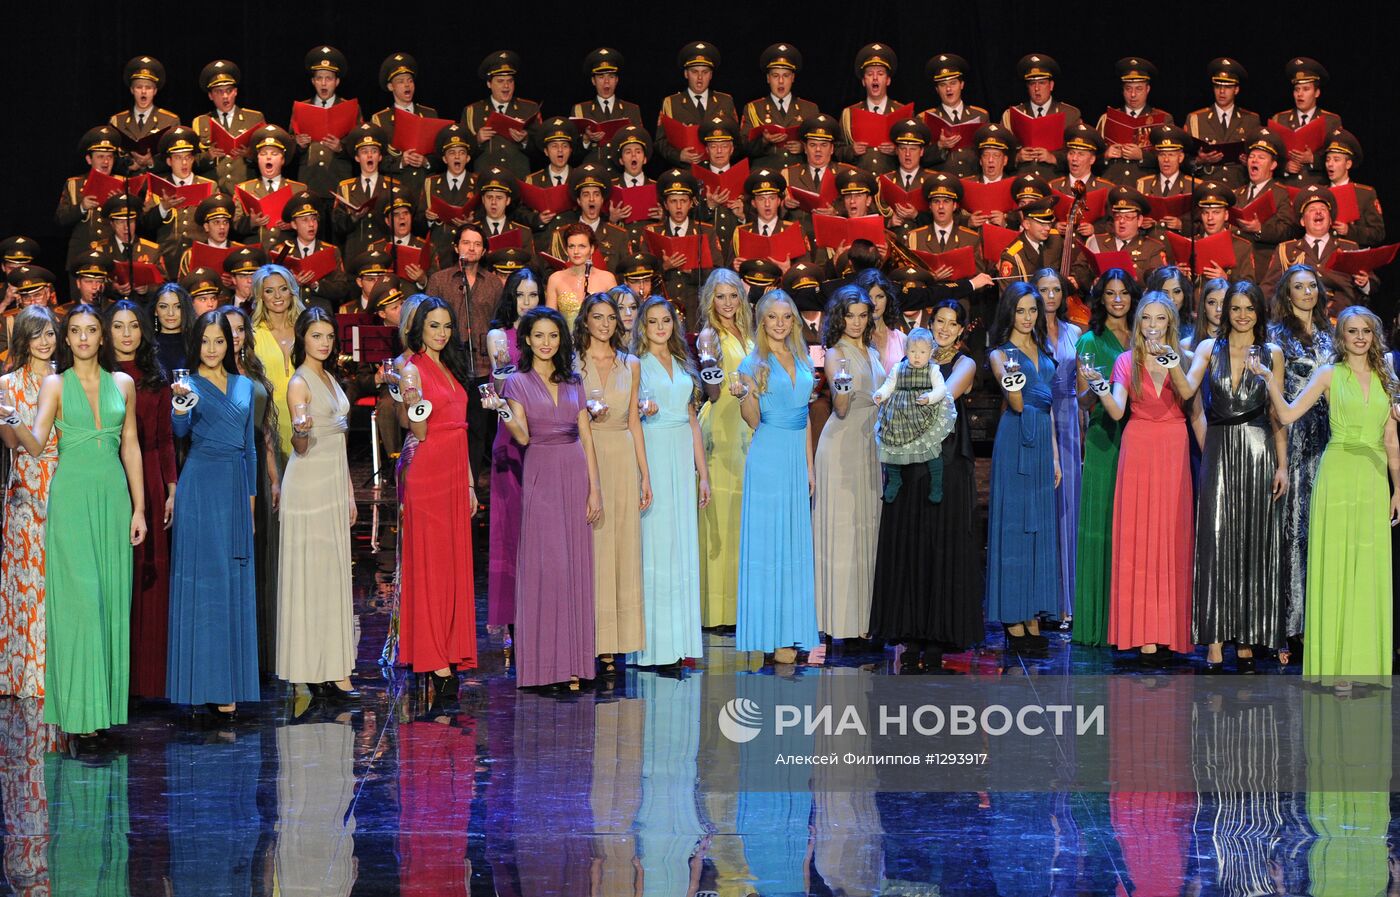 Финал конкурса "Краса России - 2012"